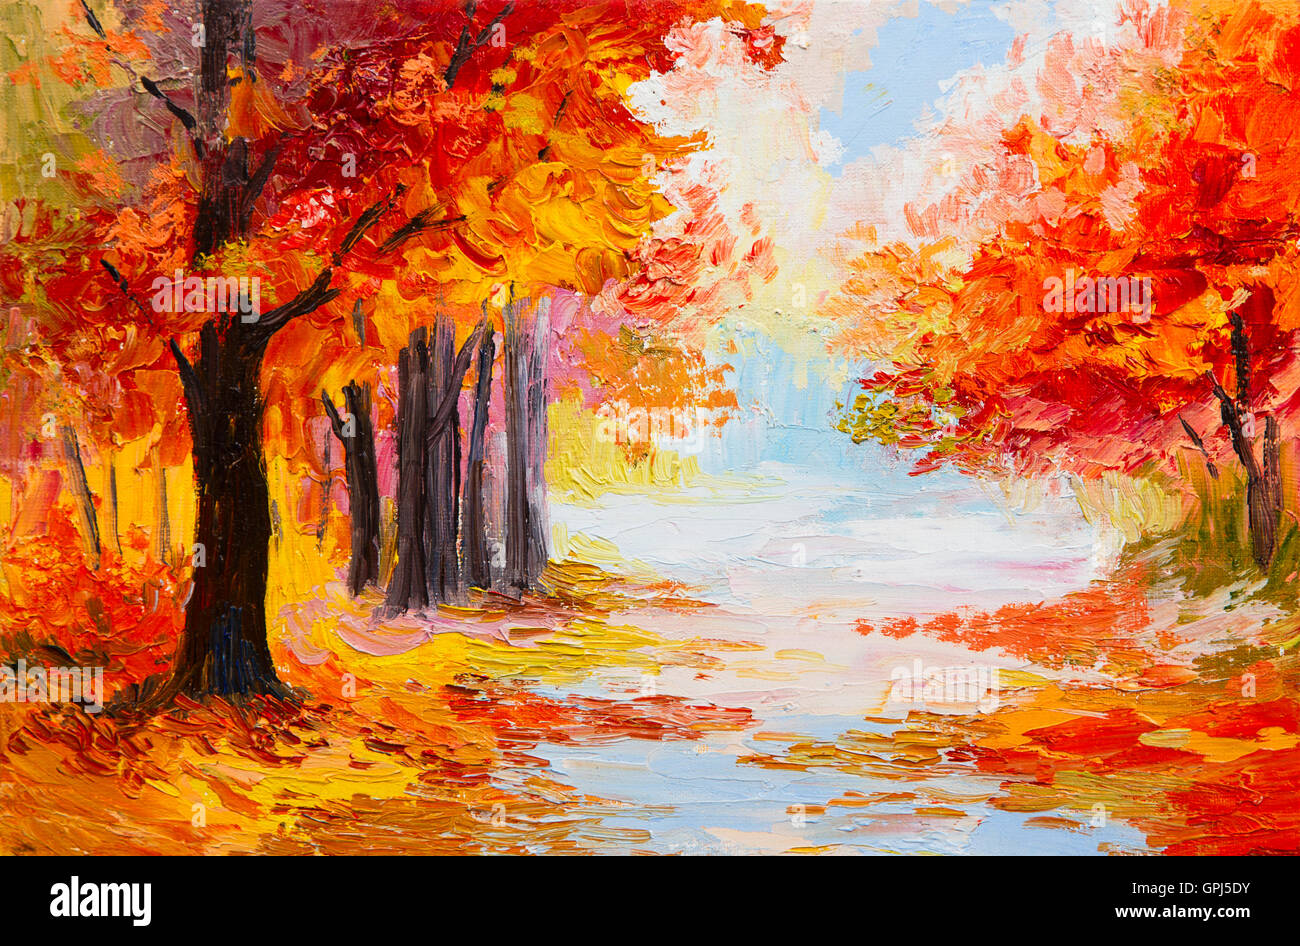 Peinture à l'huile - paysage de forêt aux couleurs automnales. La peinture abstraite Banque D'Images